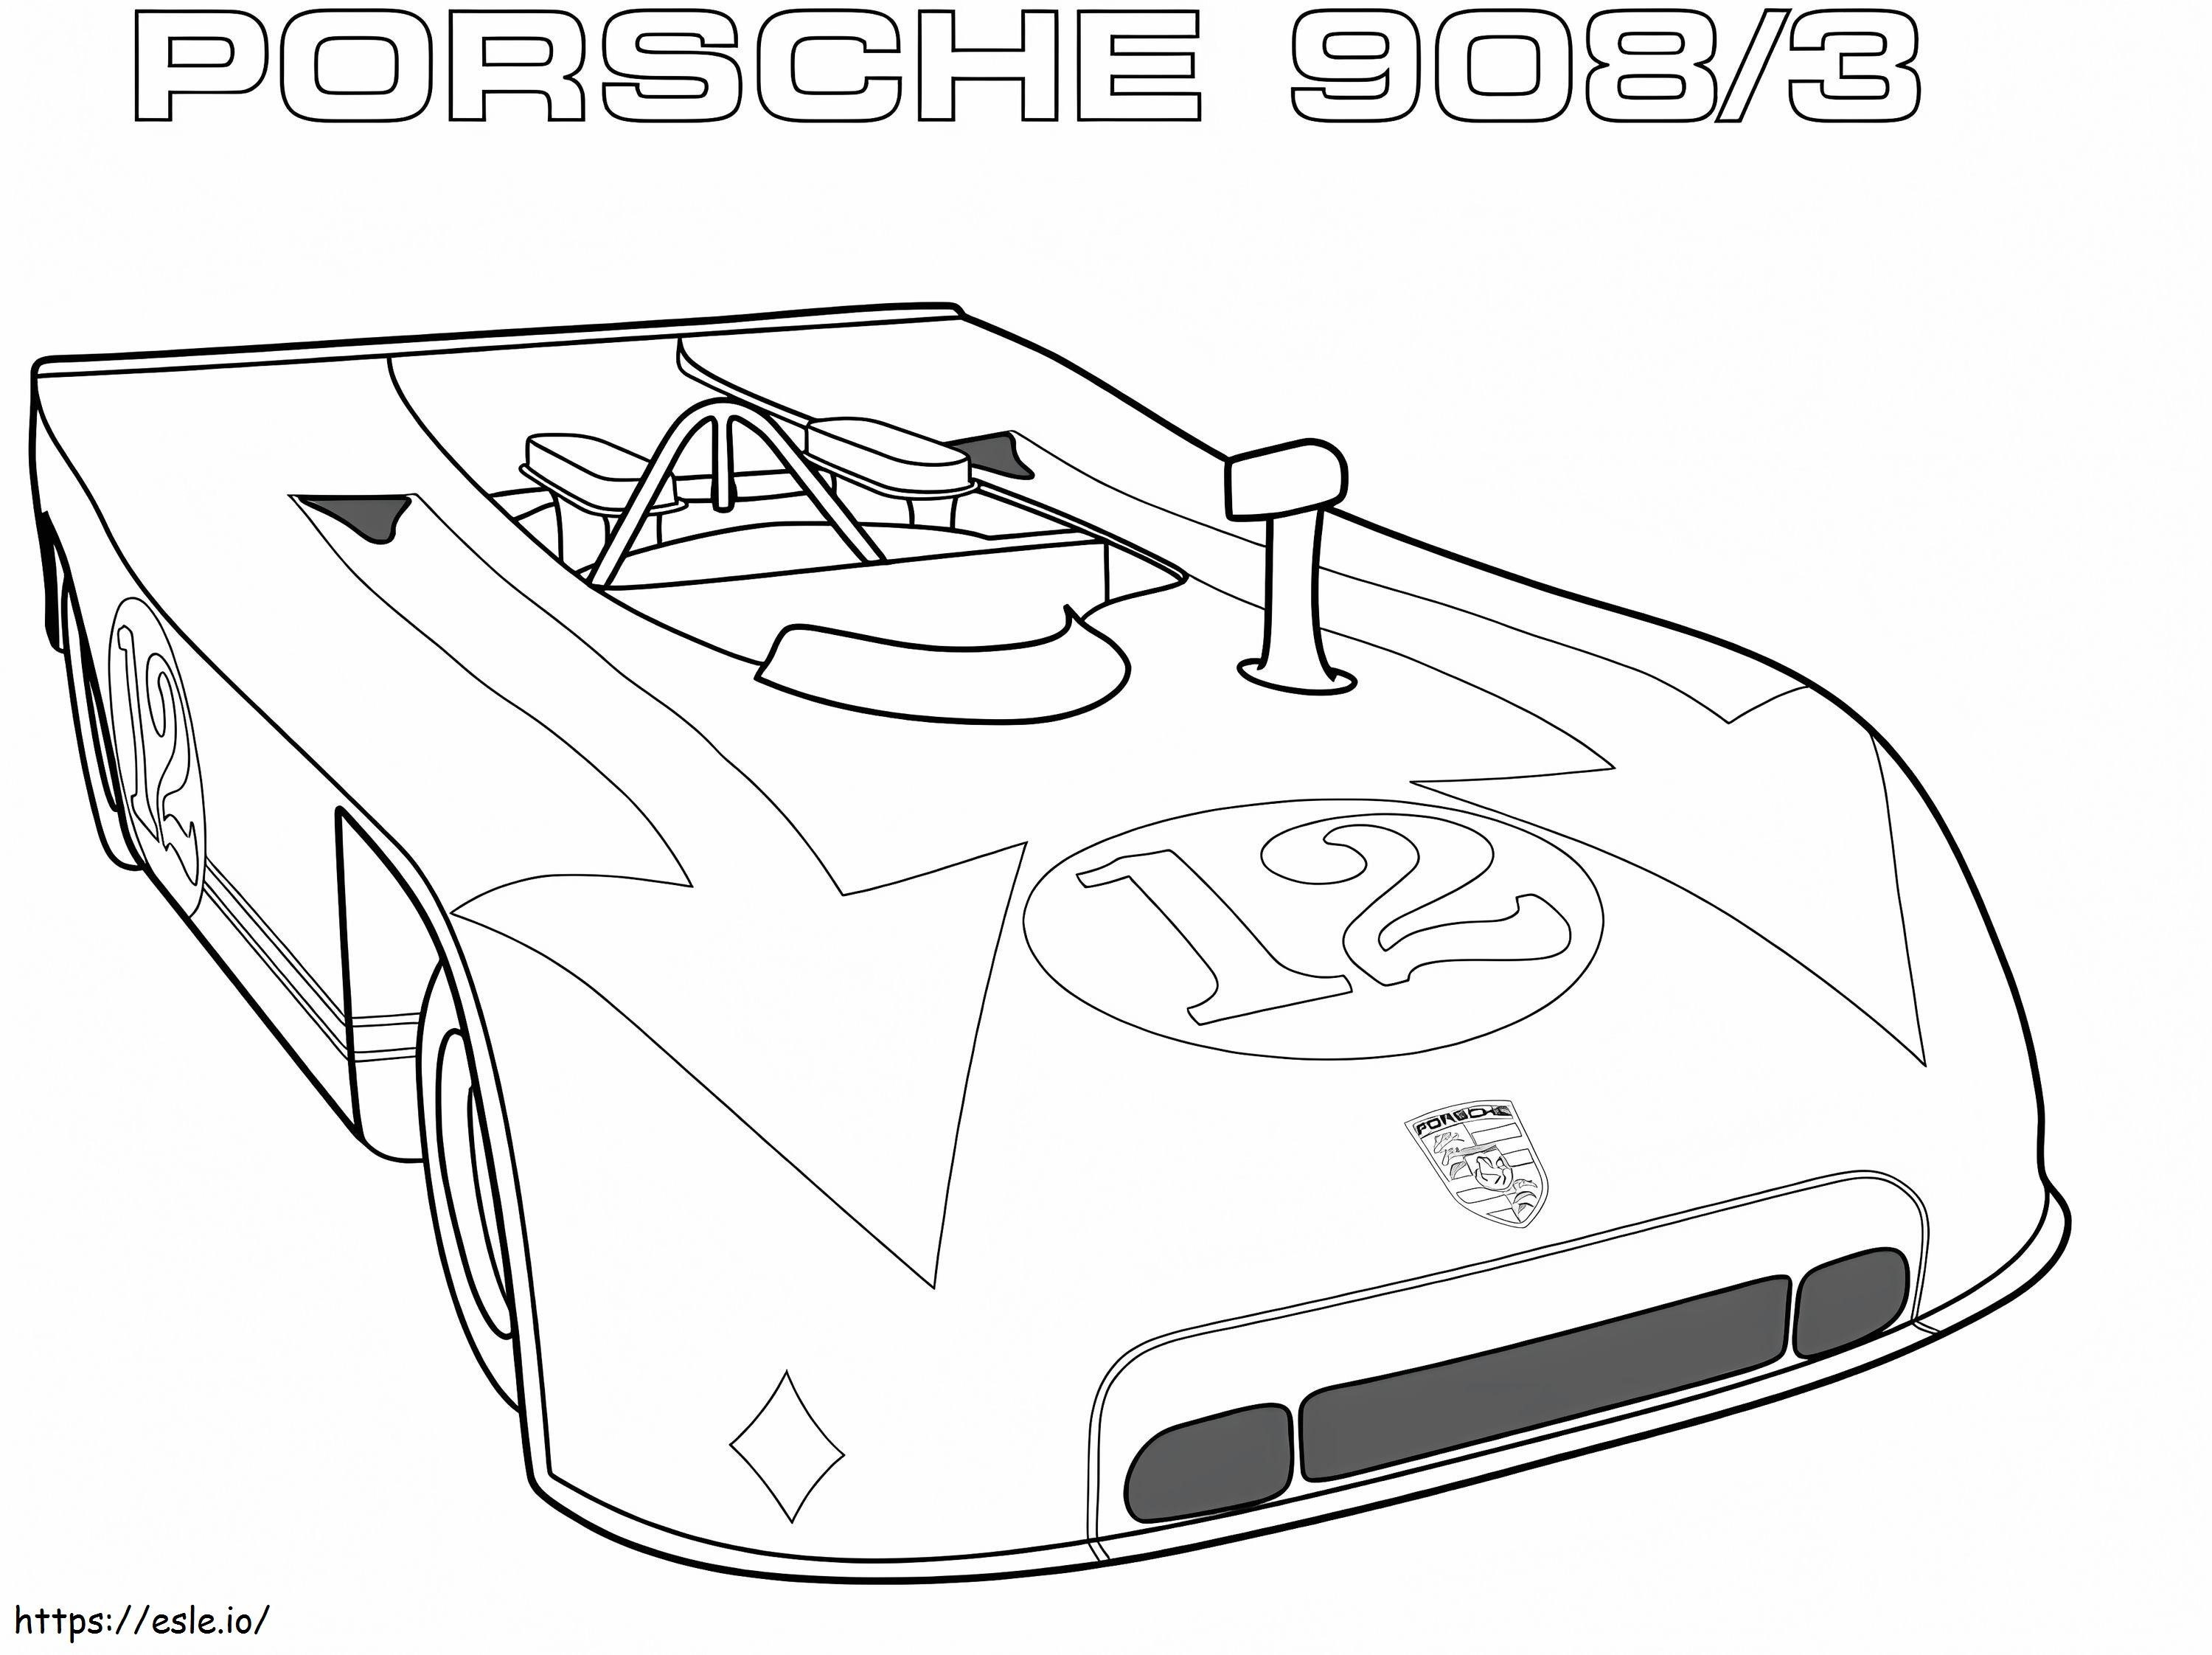 Coloriage Porsche 9083 de  à imprimer dessin